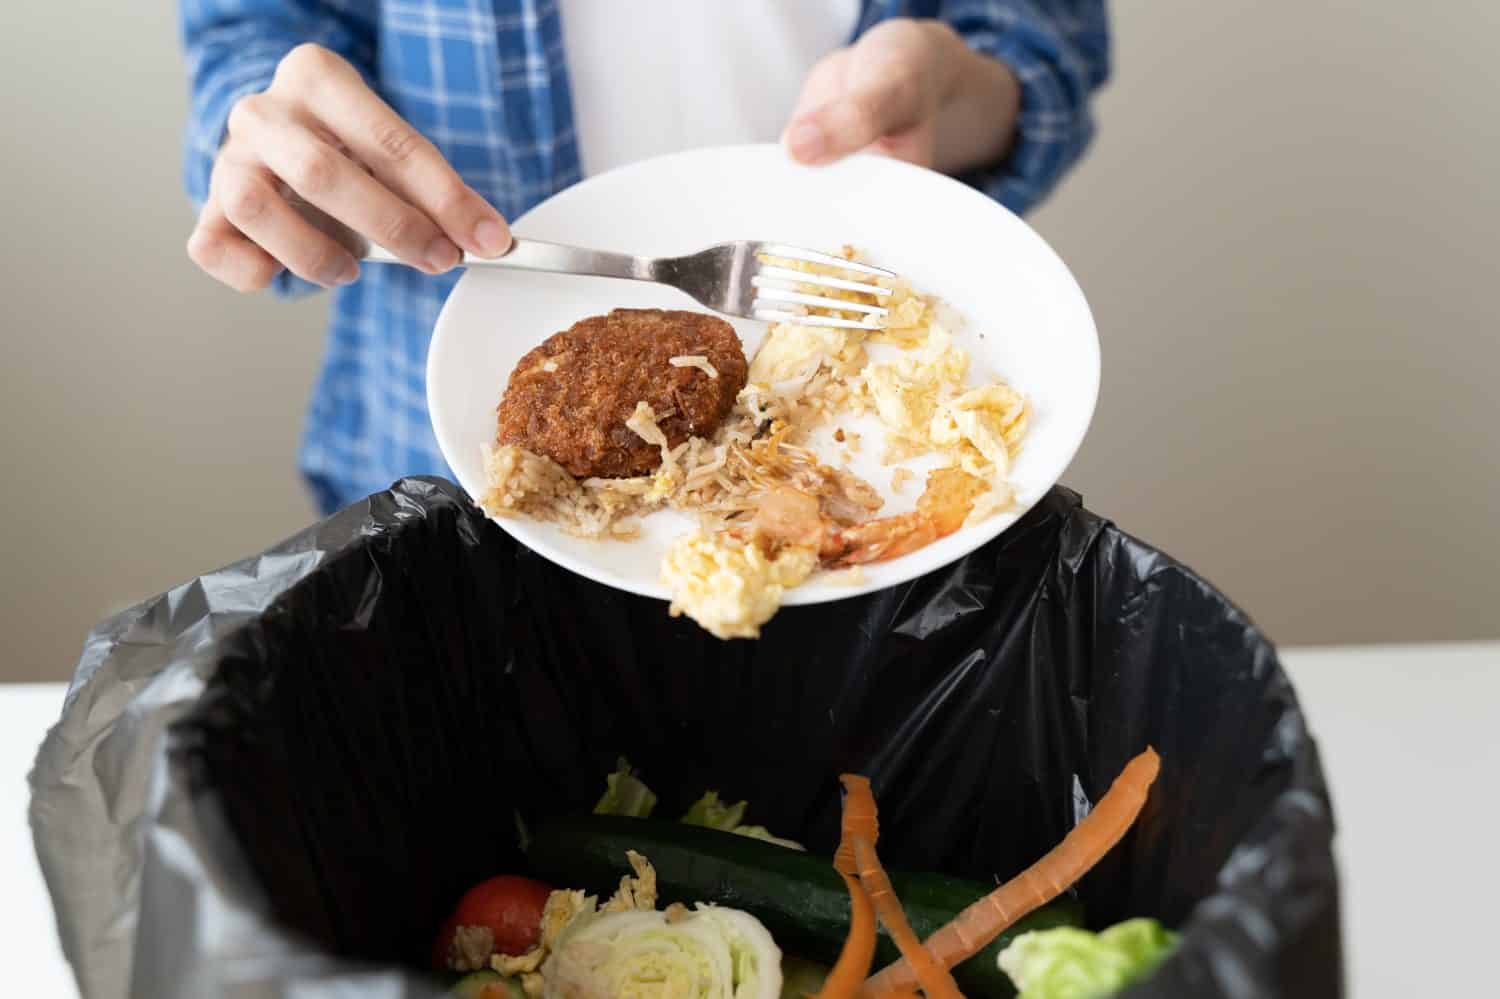 le persone mettono la spazzatura biologica proveniente dai rifiuti alimentari nelle case domestiche nei contenitori del compost per produrre fertilizzanti per ridurre l’inquinamento ambientale globale.